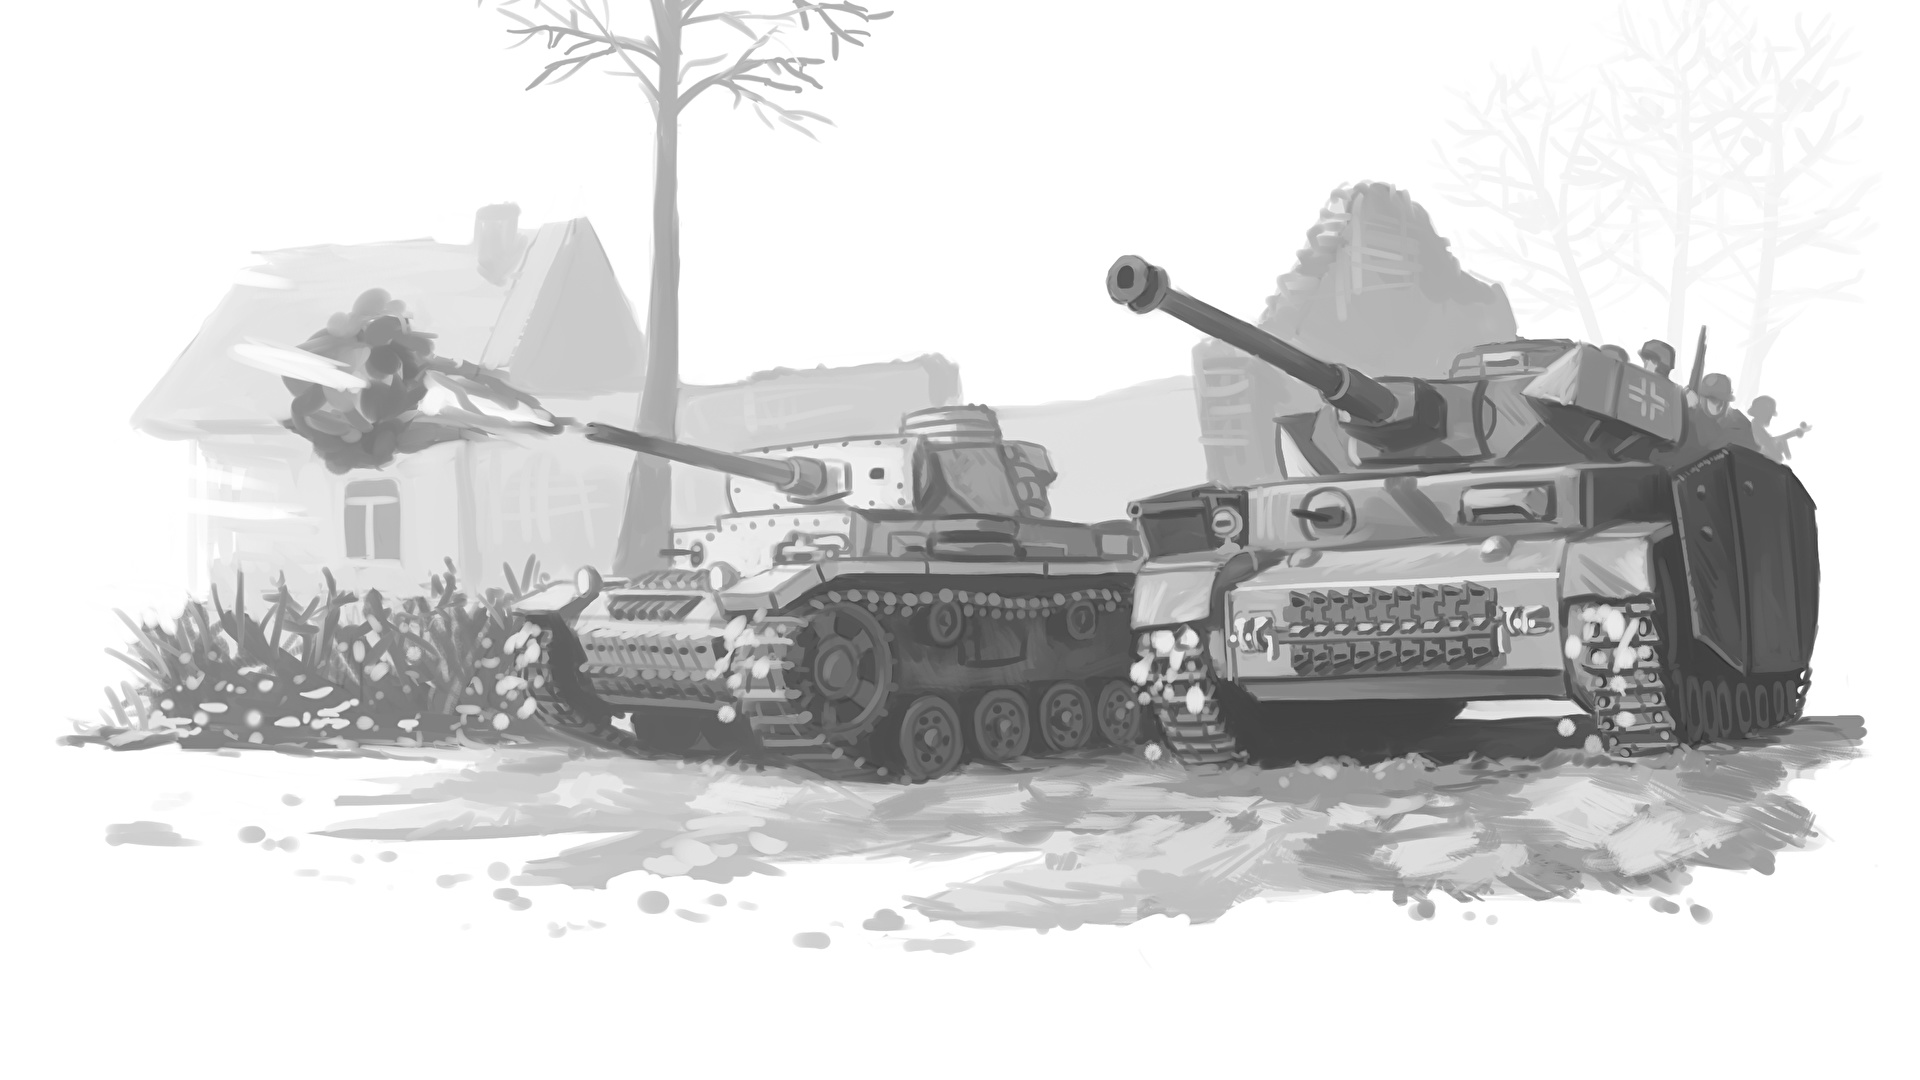 壁紙 19x1080 戦車 描かれた壁紙 白黒 ドイツ語 発射 陸軍 ダウンロード 写真